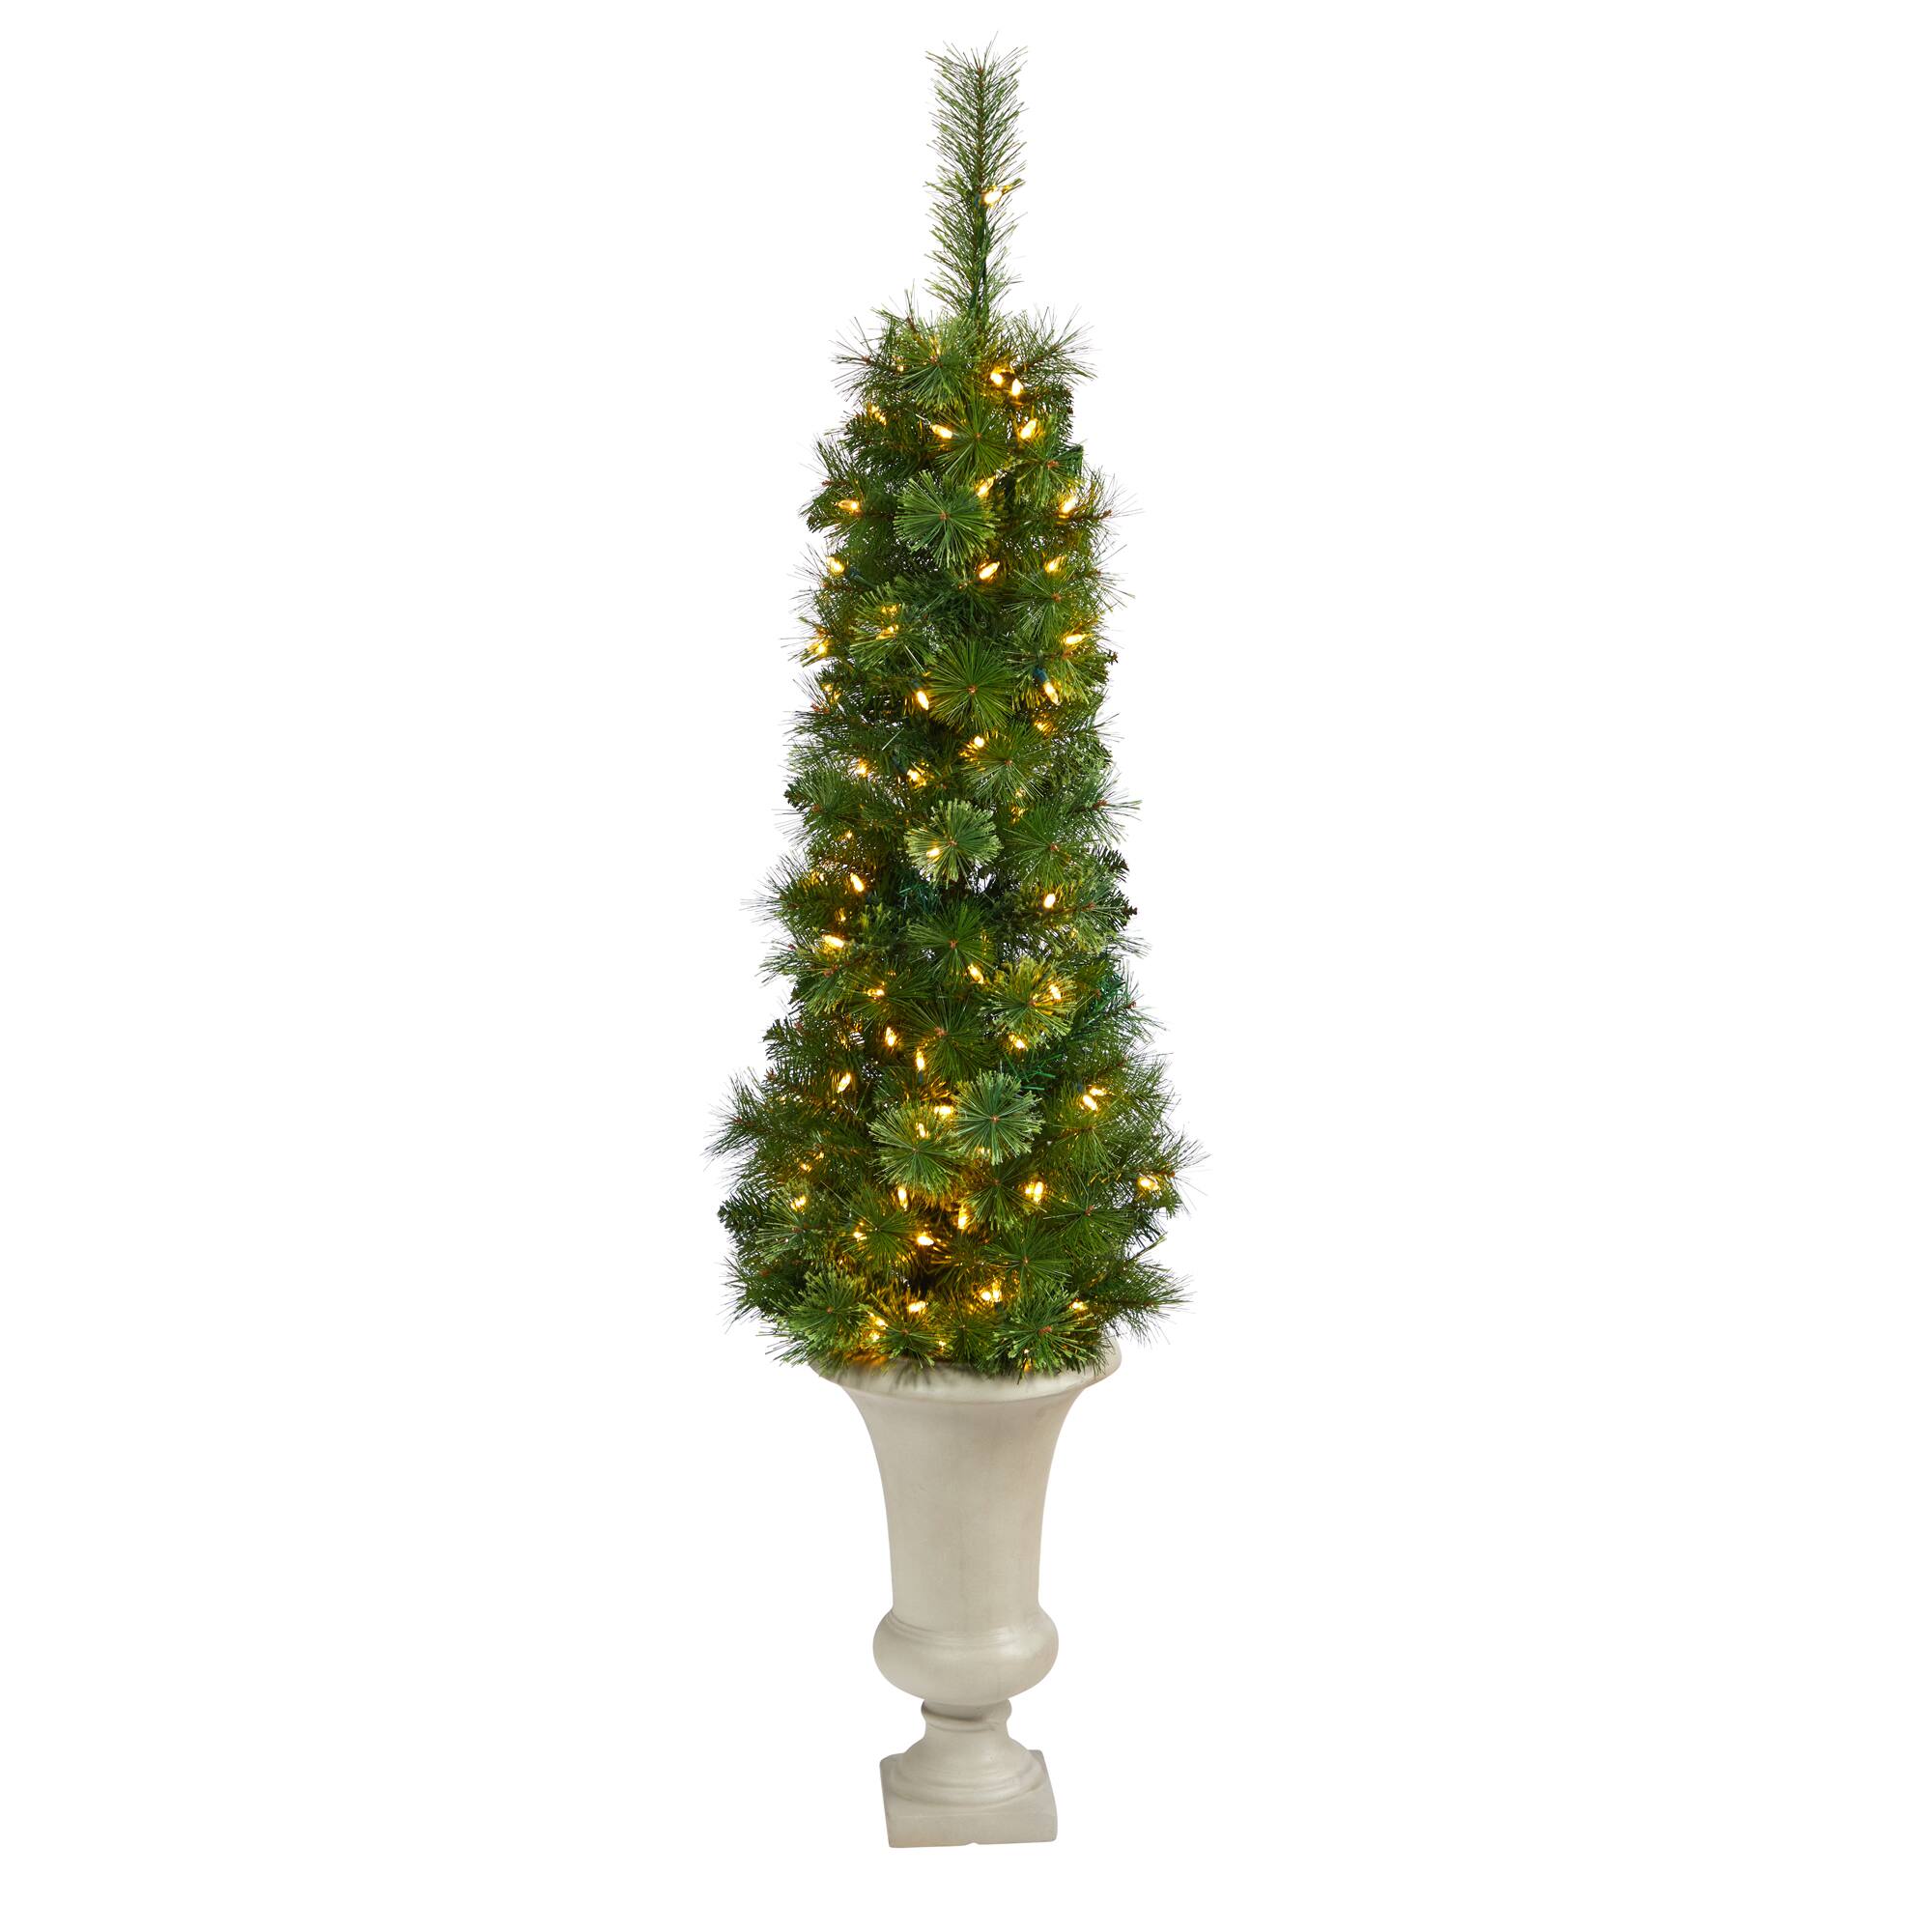 Textured Christmas Tree With Glass, Block Art, Crushed Glass Art, Resin  Art, Christmas Tree, Colorful Christmas Lights, Christmas Painting 